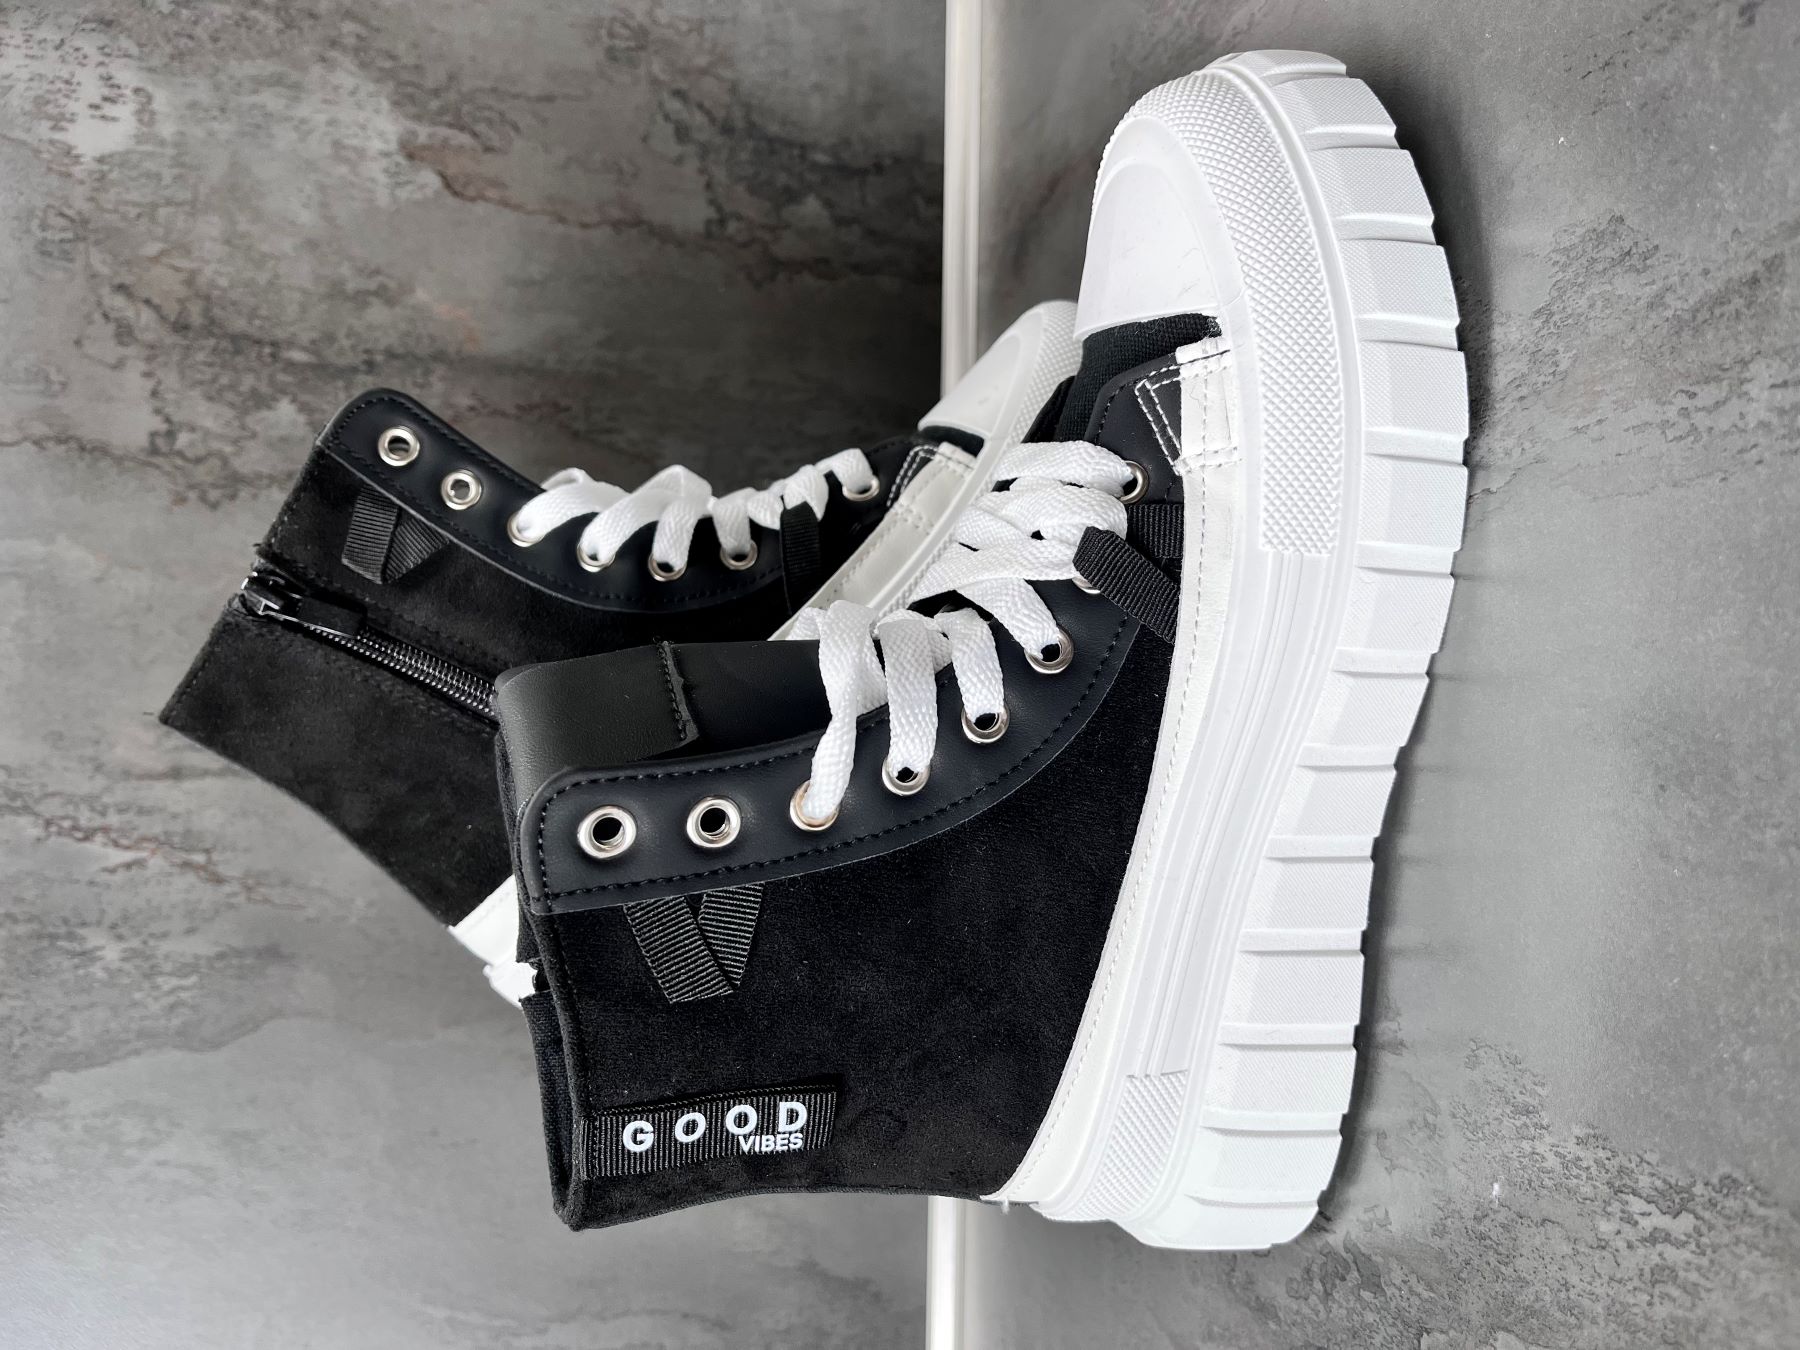 Boots black/white